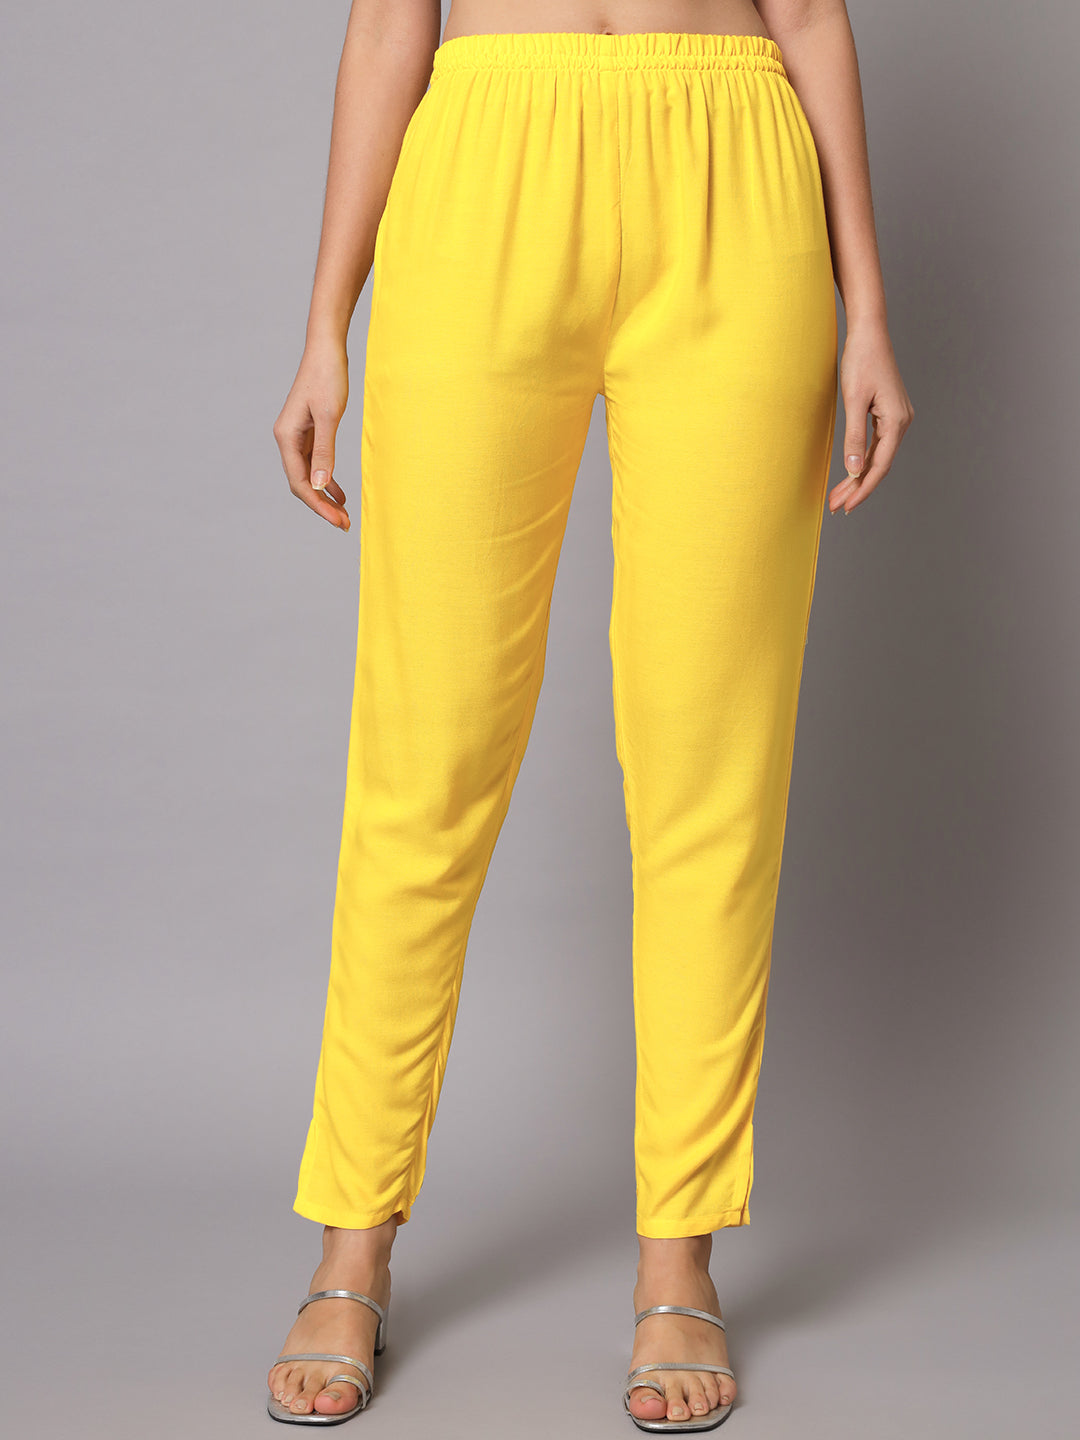 Conjunto de pantalones Anarkali Kurta amarillos y blancos con Dupatta